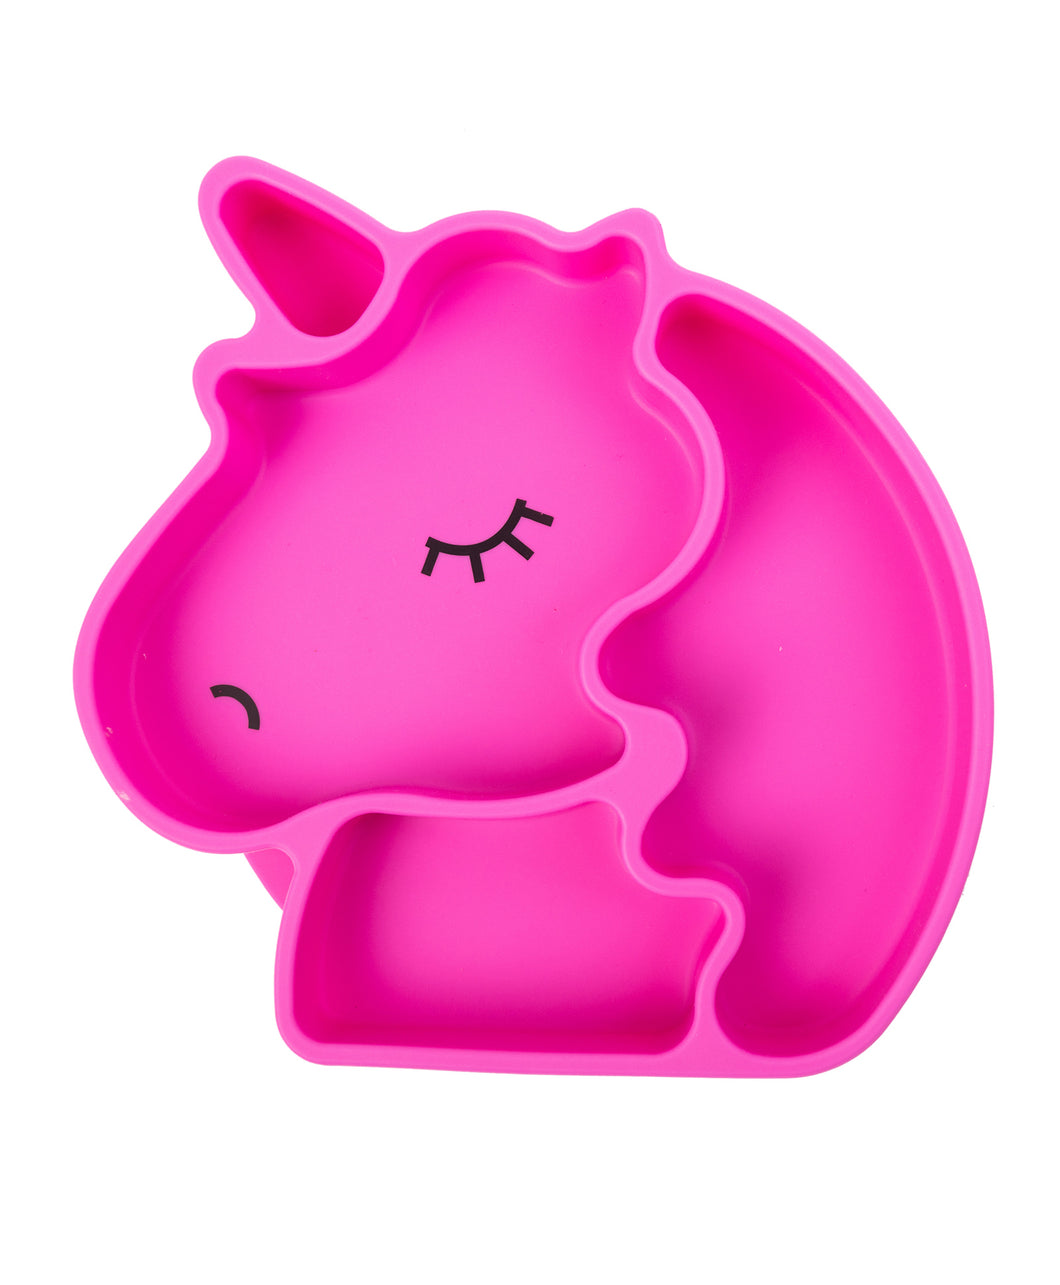 Kids Unicorn plate pink by Amini